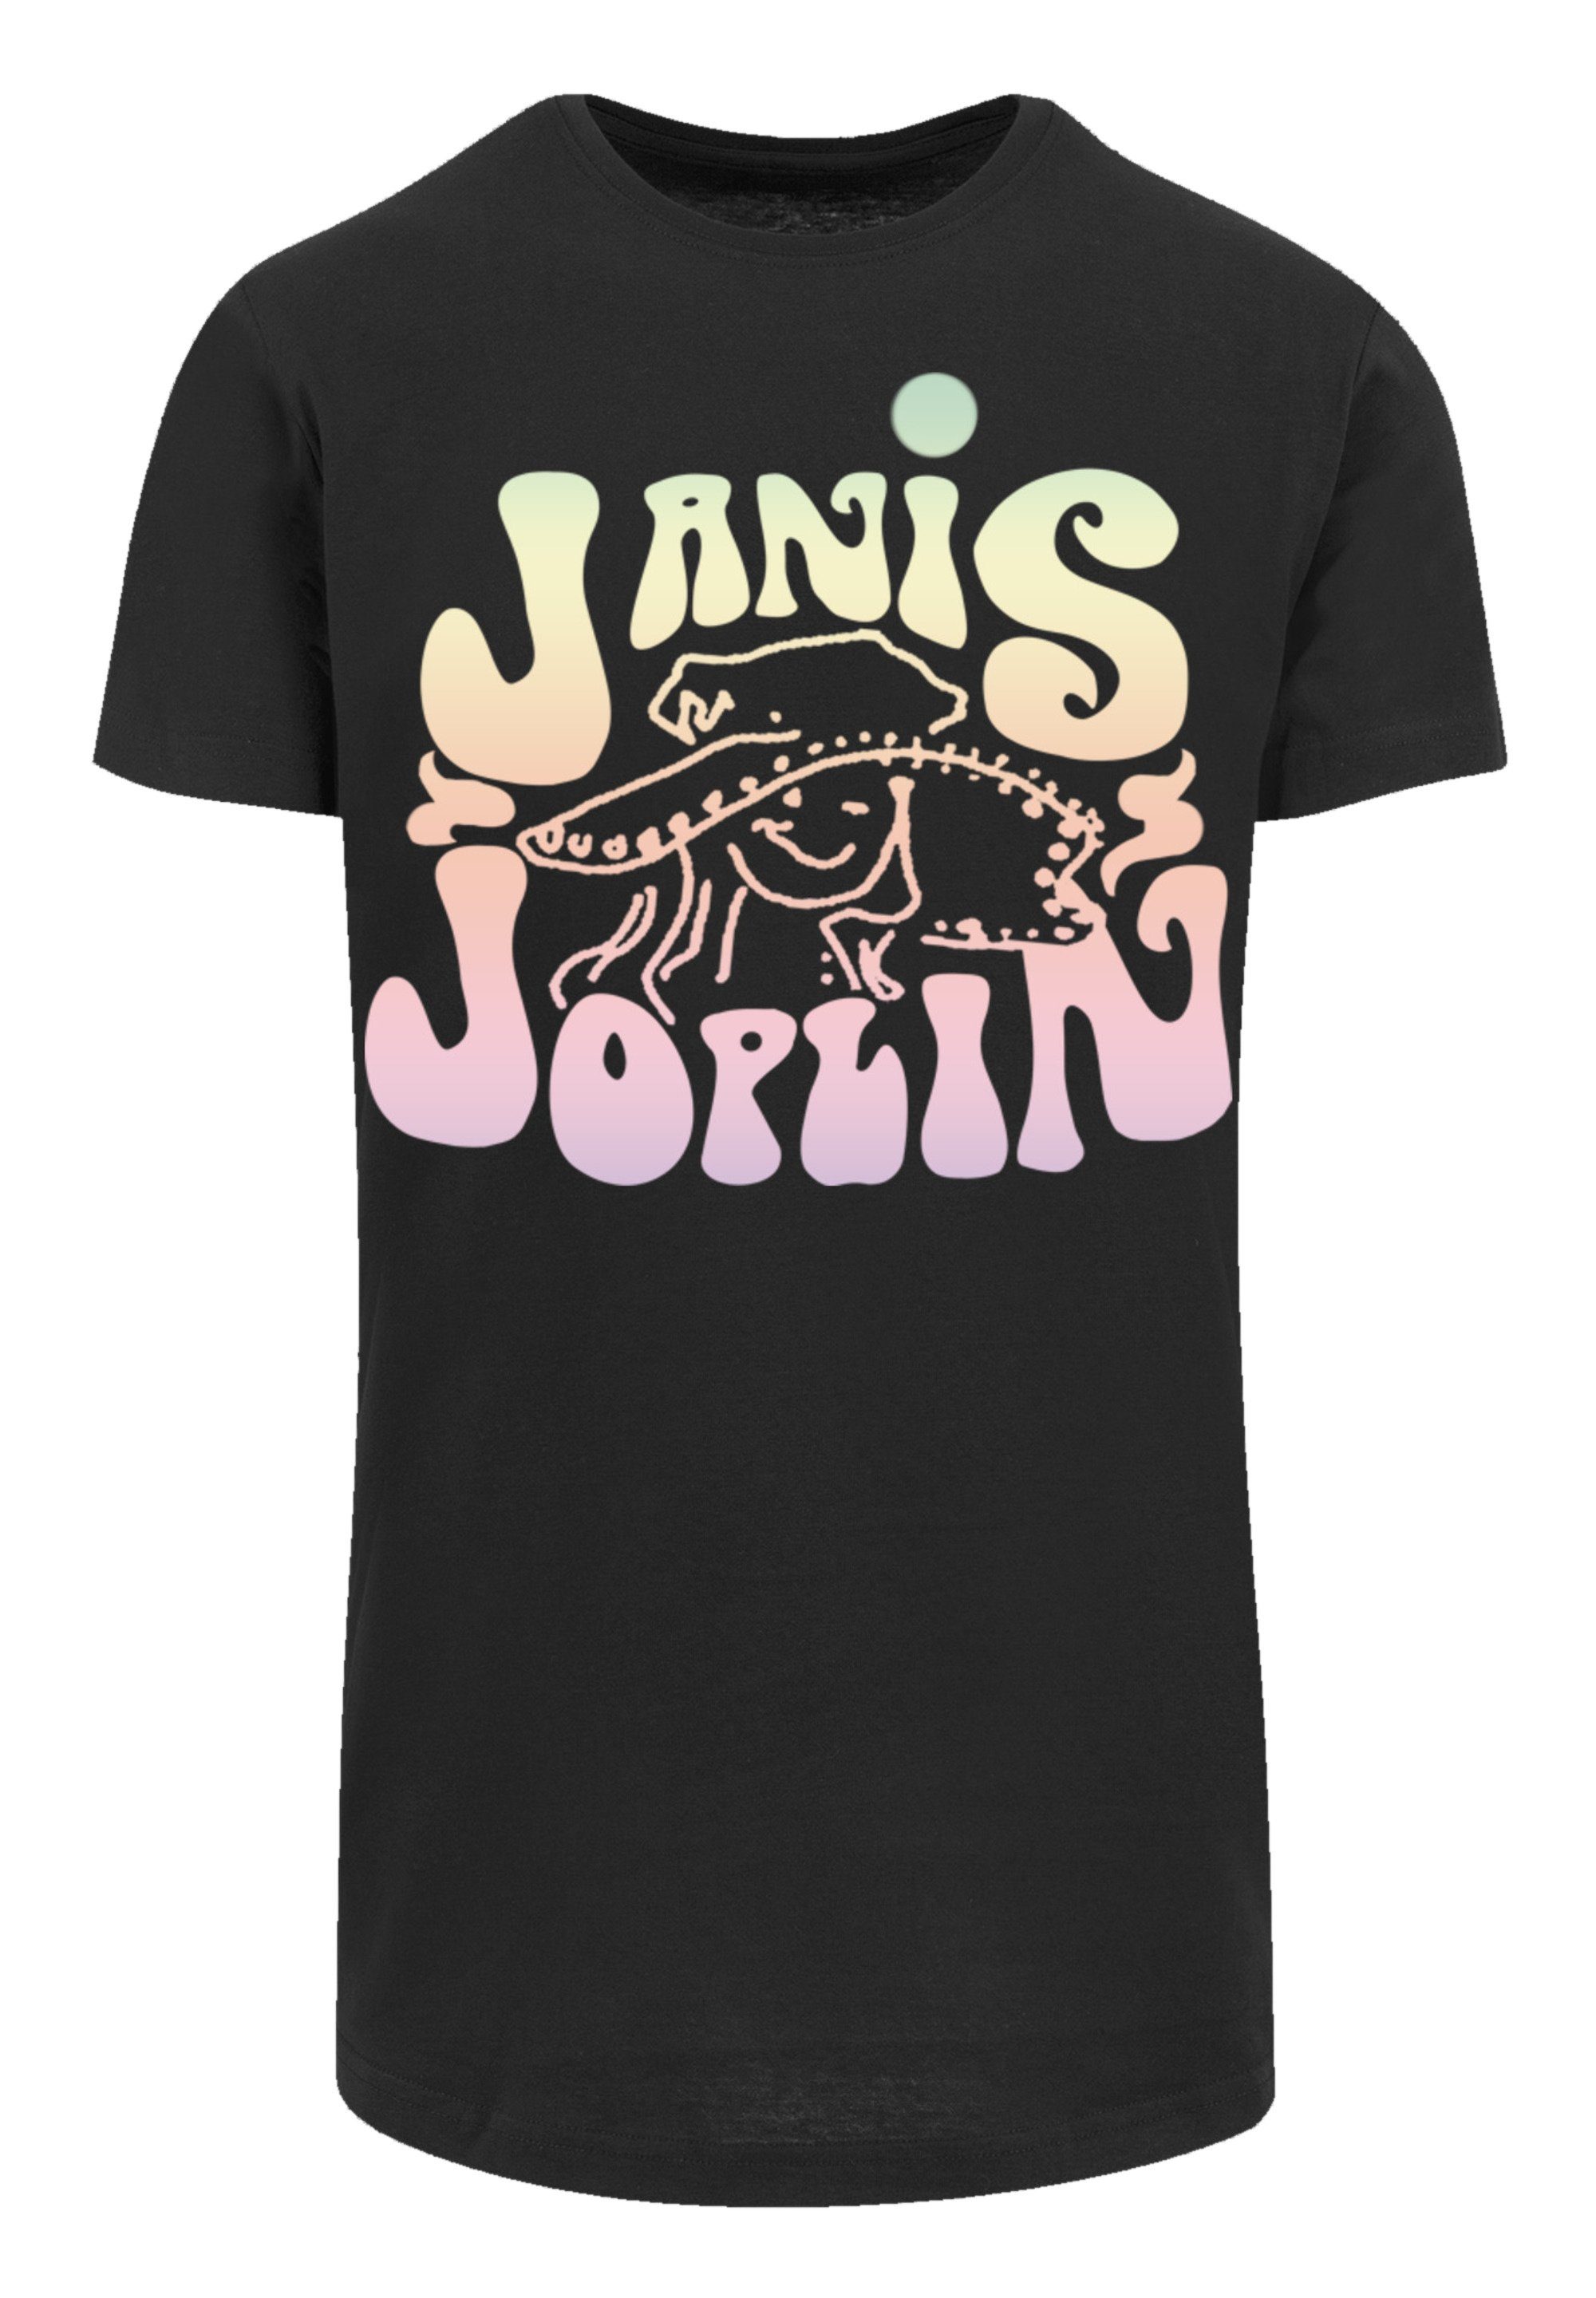 F4NT4STIC T-Shirt PLUS SIZE Janis Joplin Pastel Logo Print schwarz